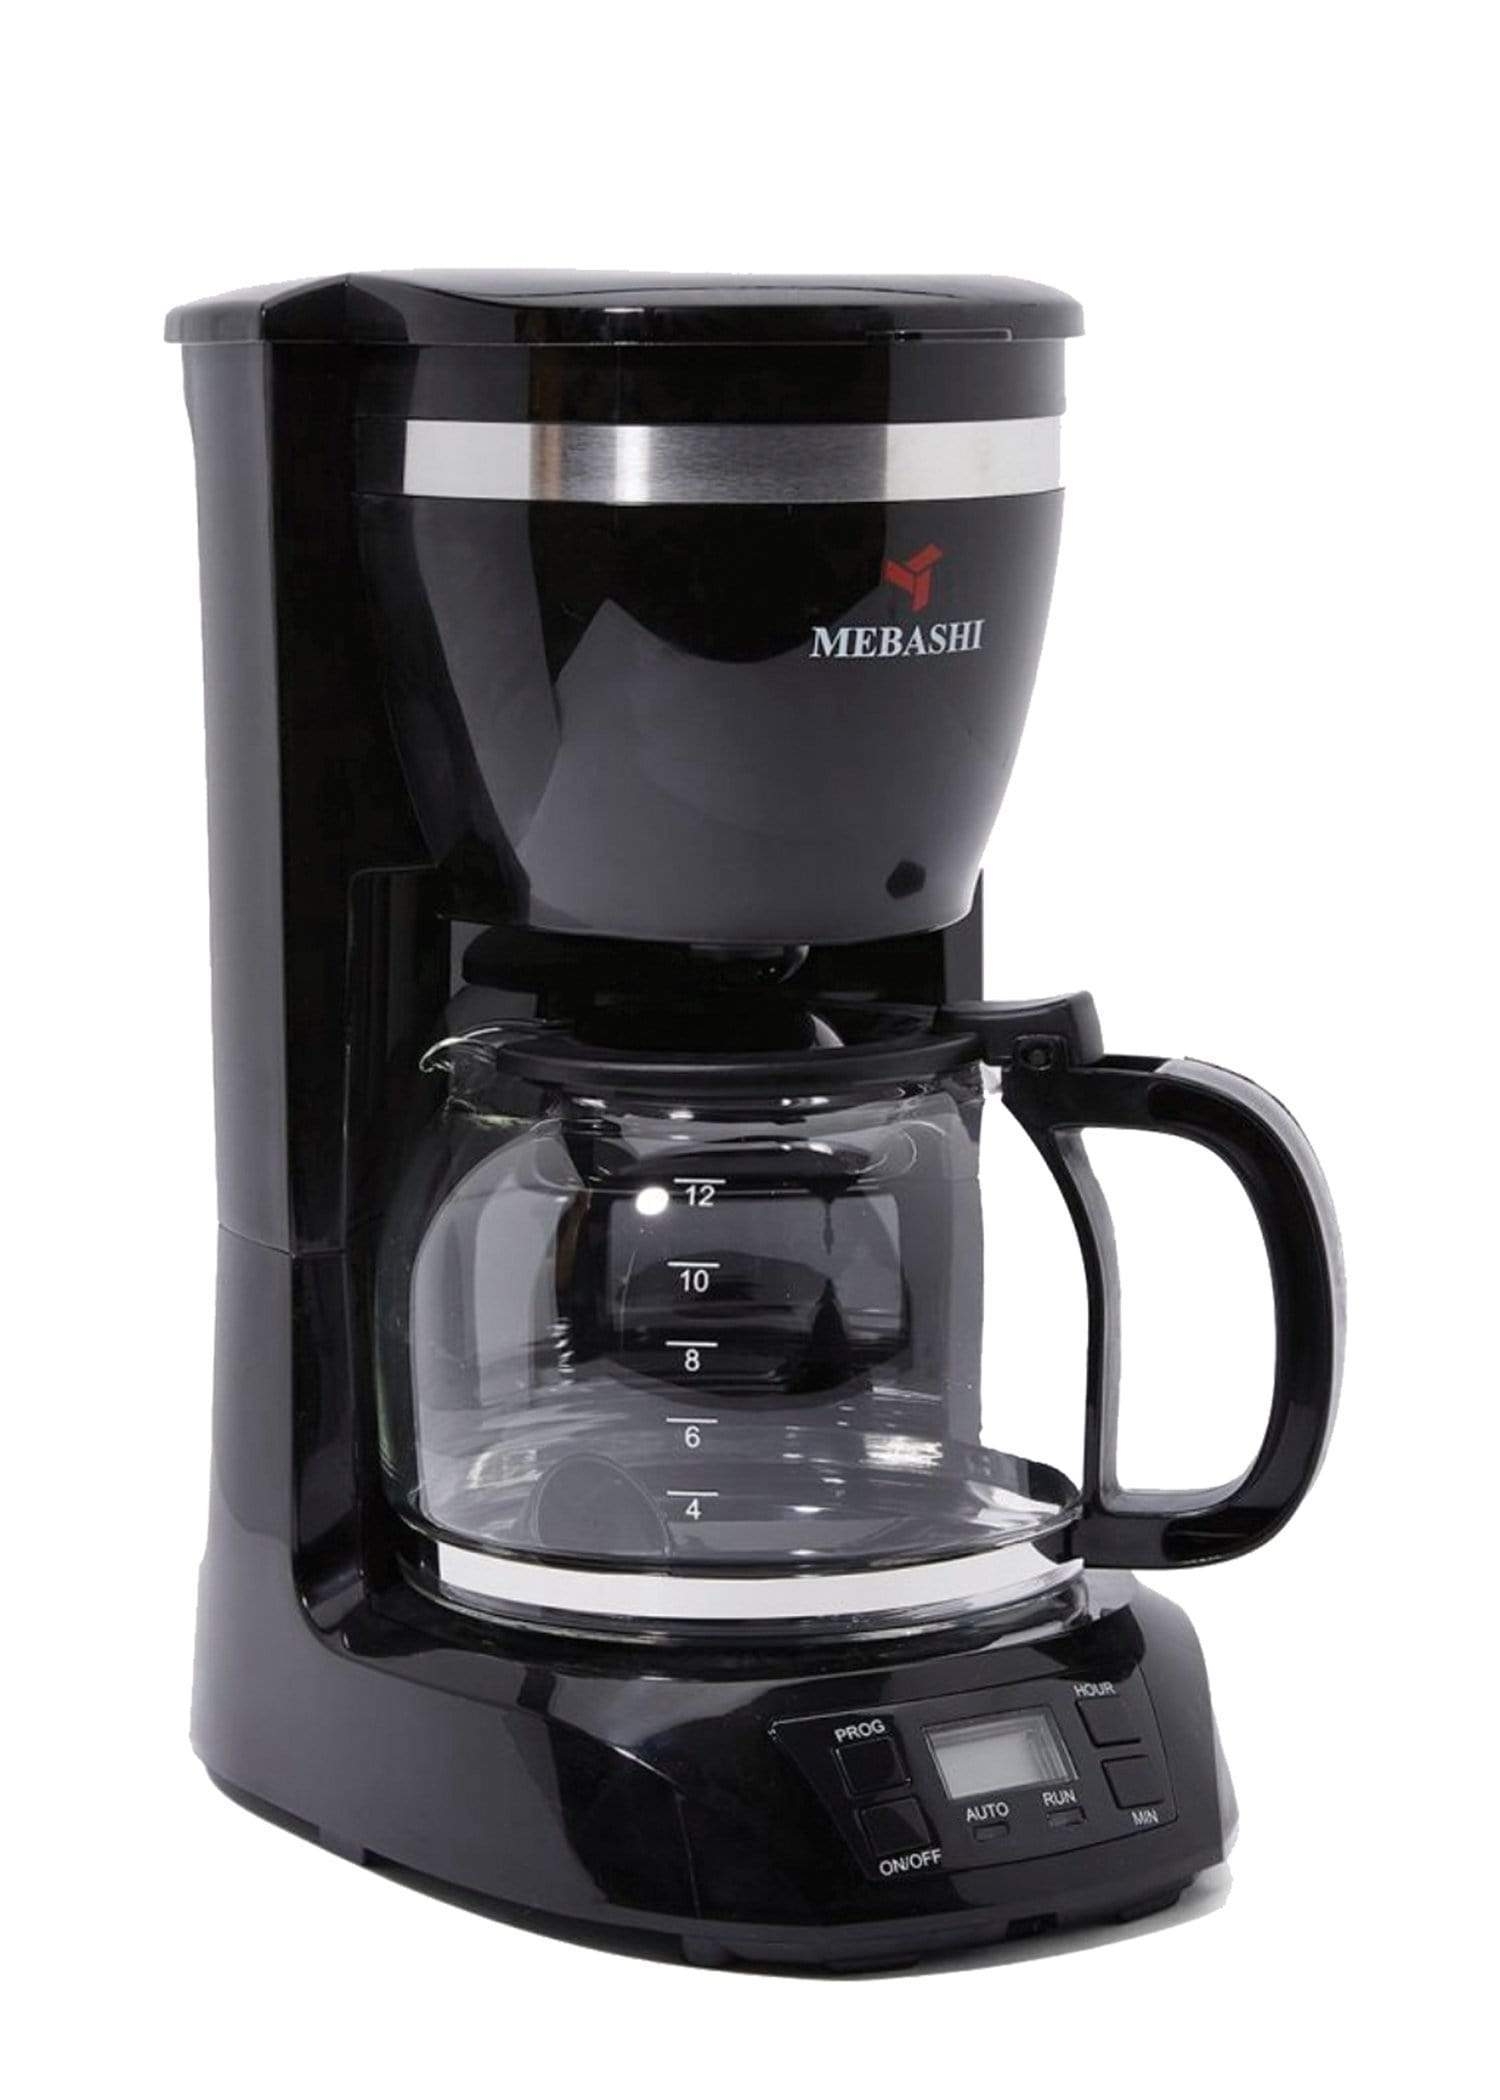 ماكينة قهوة تقطير ميباشي Mebashi Drip Coffee Machine 1.5L ME-DCM 1001B